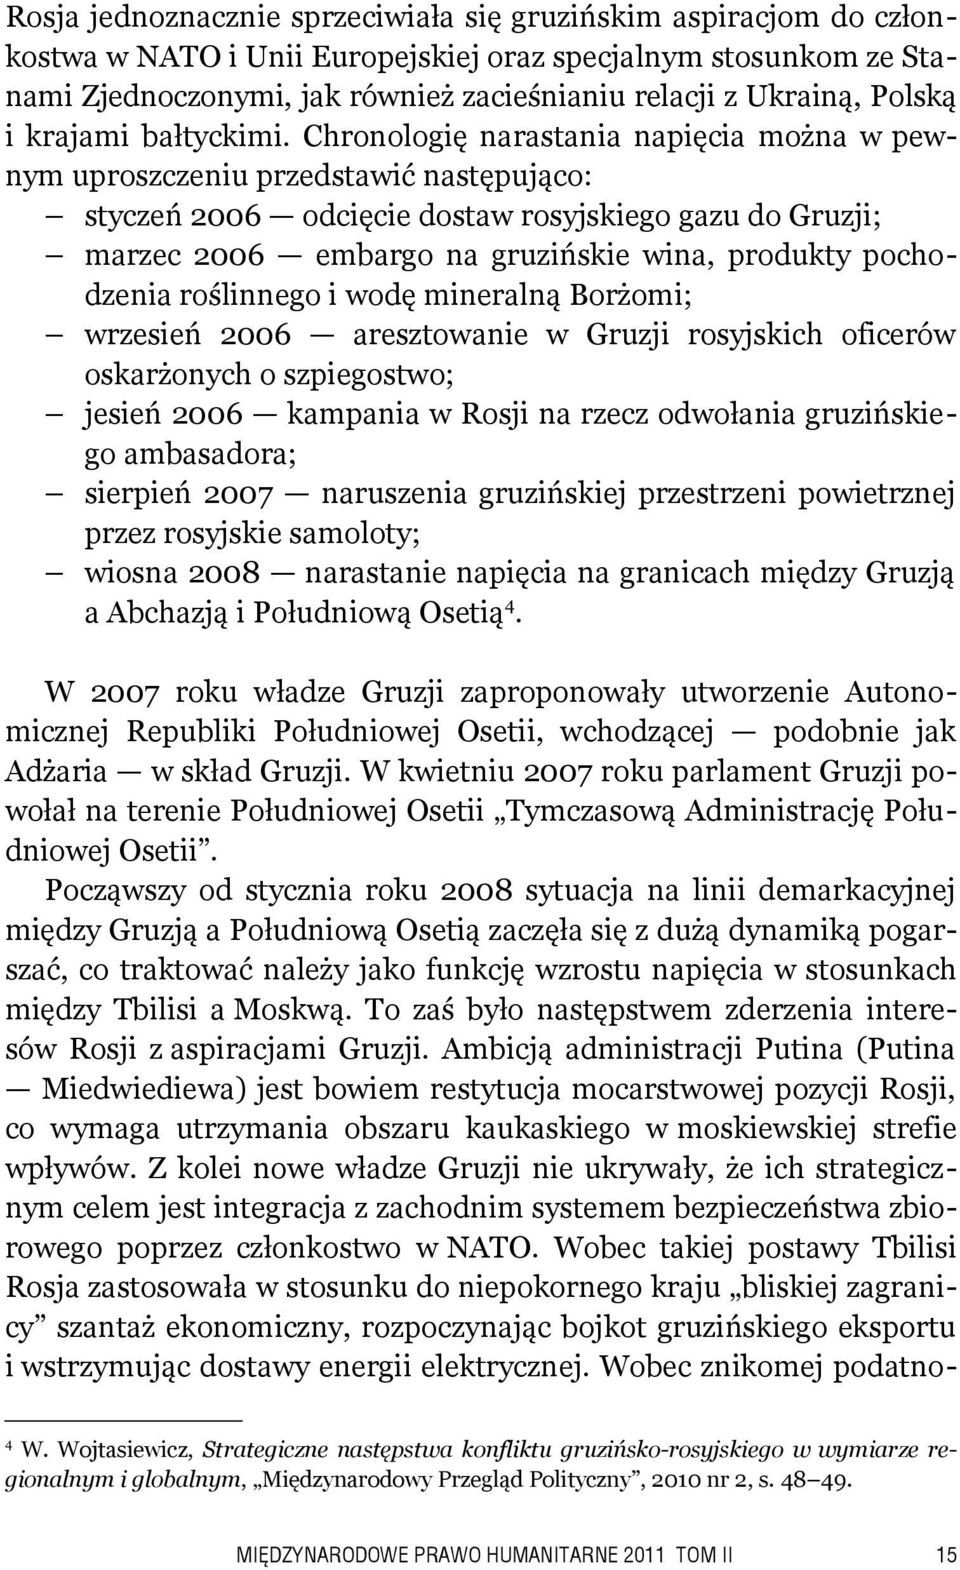 Chronologię narastania napięcia można w pewnym uproszczeniu przedstawić następująco: styczeń 2006 odcięcie dostaw rosyjskiego gazu do Gruzji; marzec 2006 embargo na gruzińskie wina, produkty